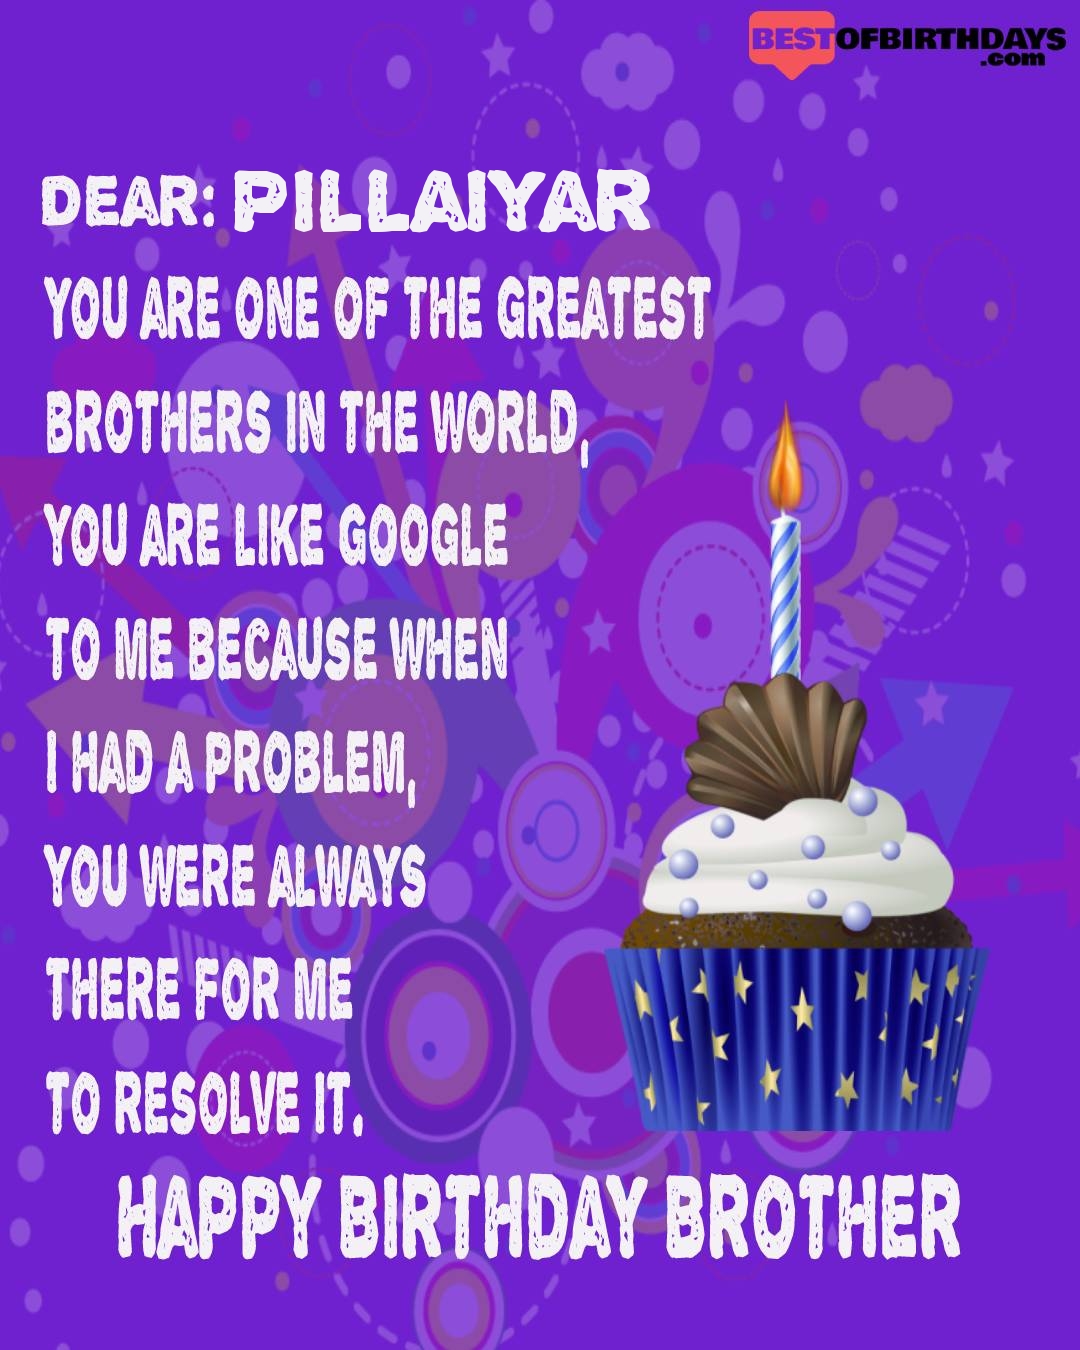 Happy birthday pillaiyar bhai brother bro